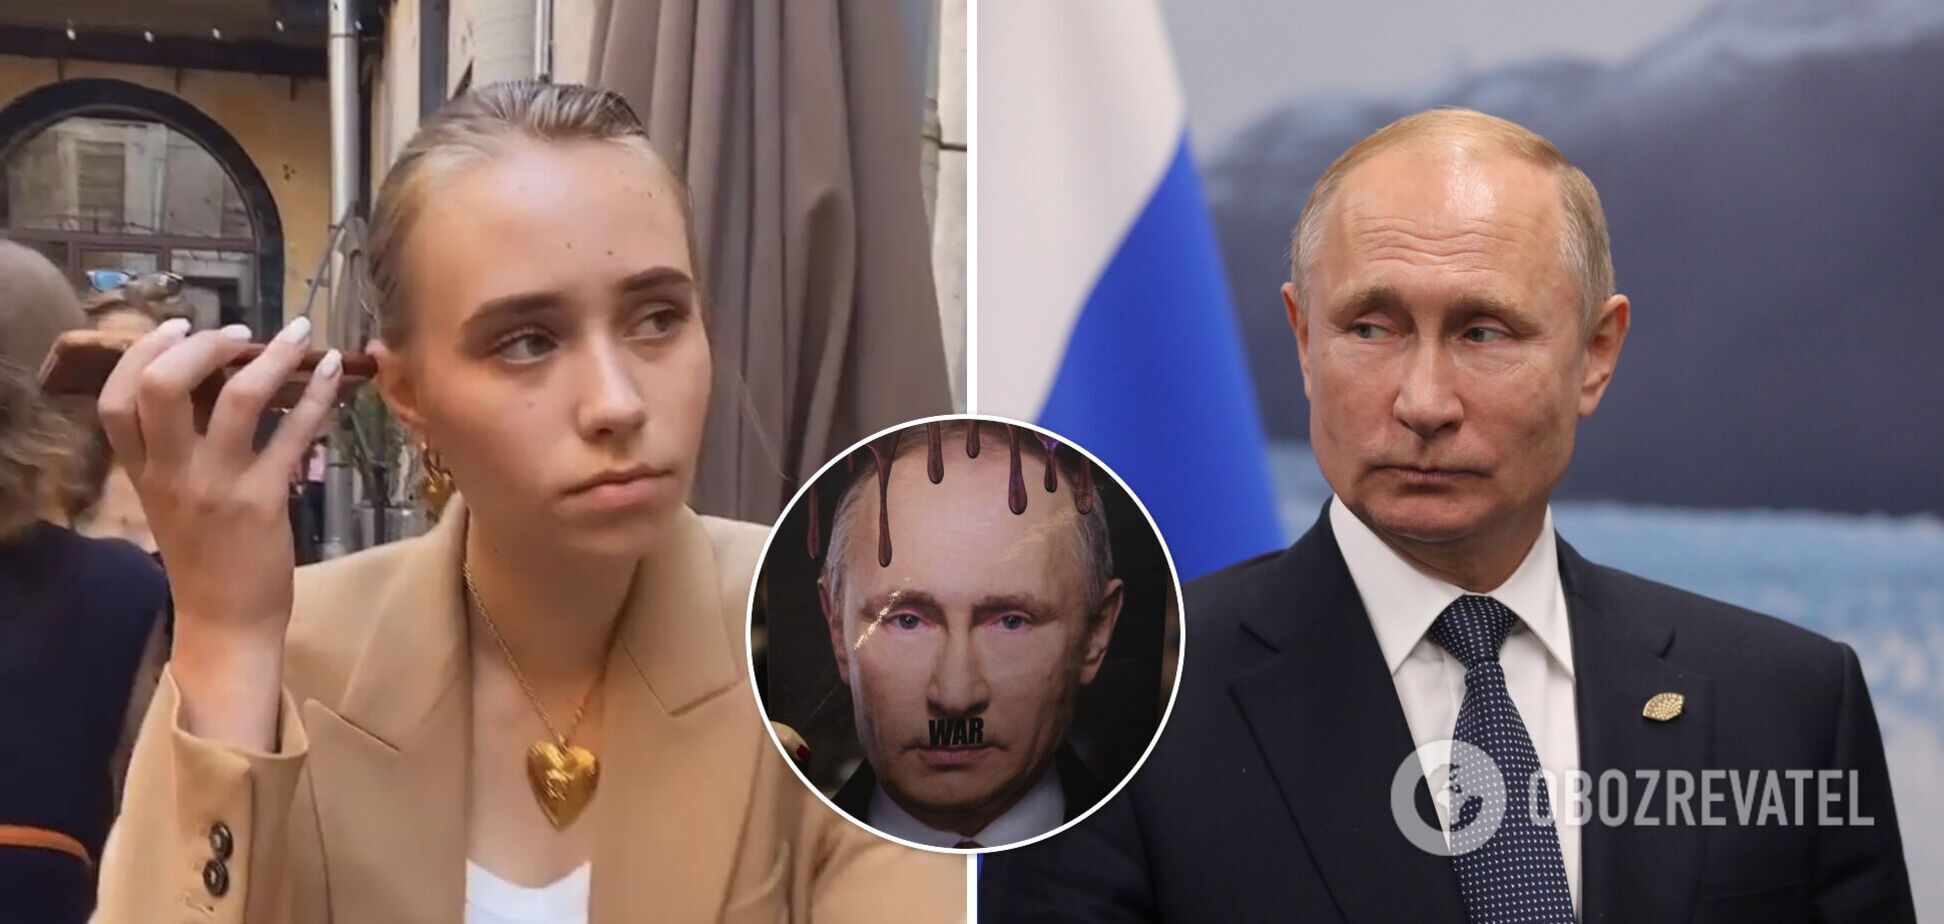 'Таємна дочка Путіна' видалила сторінку в Instagram після погроз та цькування. Хто така Єлизавета Кривоногих